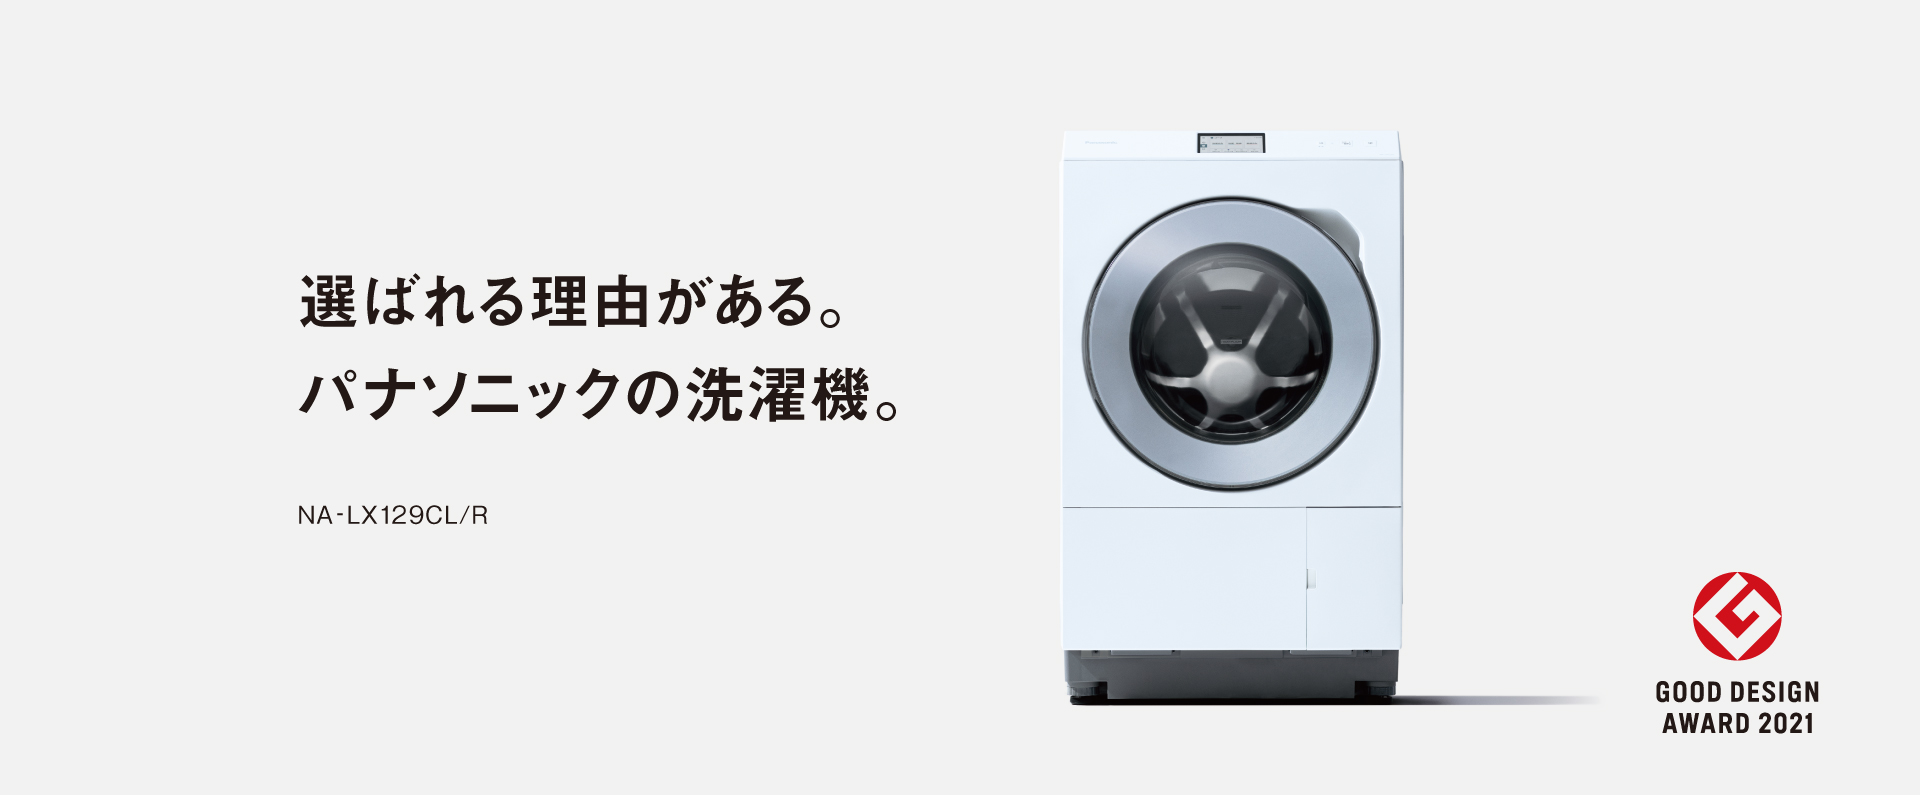 選ばれる理由がある。パナソニックの洗濯機。NA-LX129CL/R